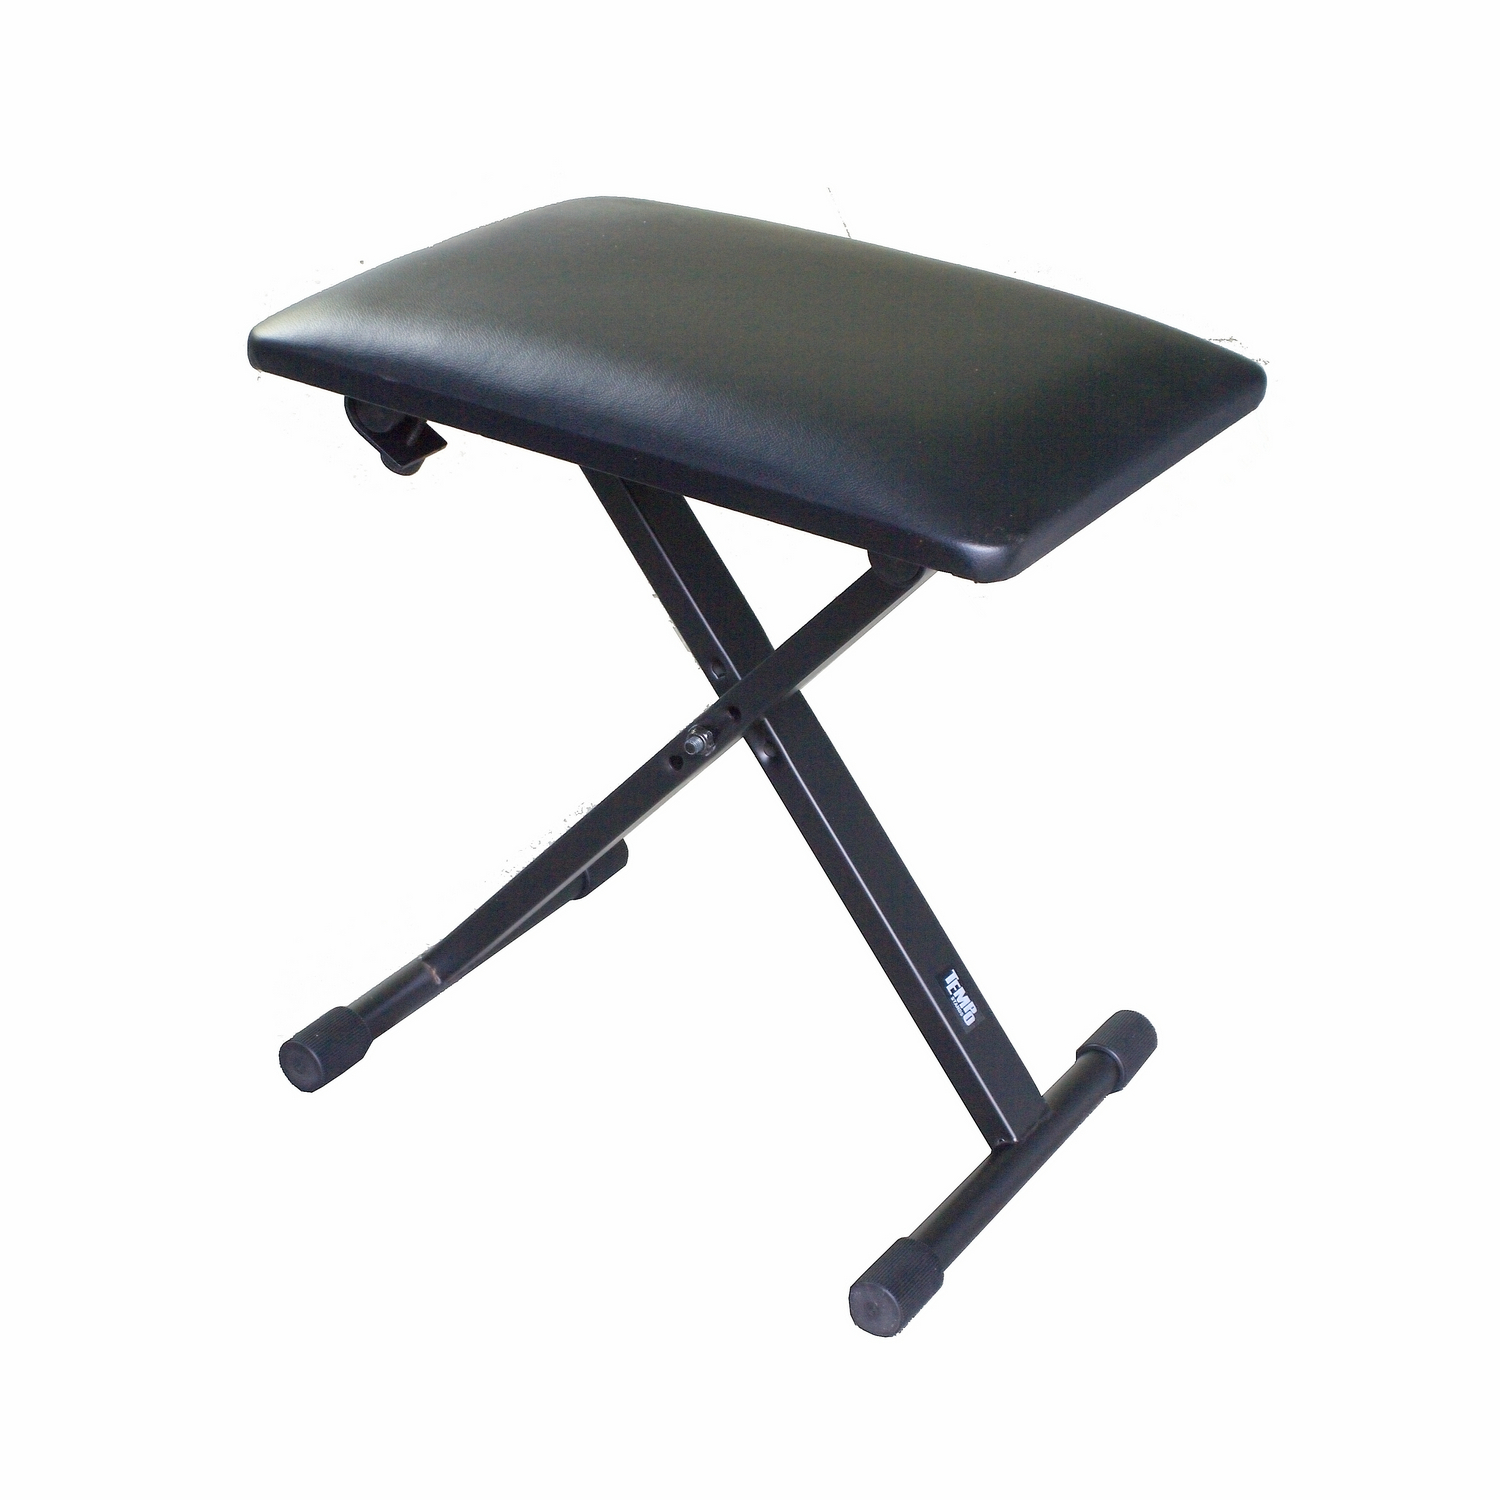 TEMPO KB100 - скамейка металлическая с 3 фиксированными регулировками по высоте, мягкая подушка